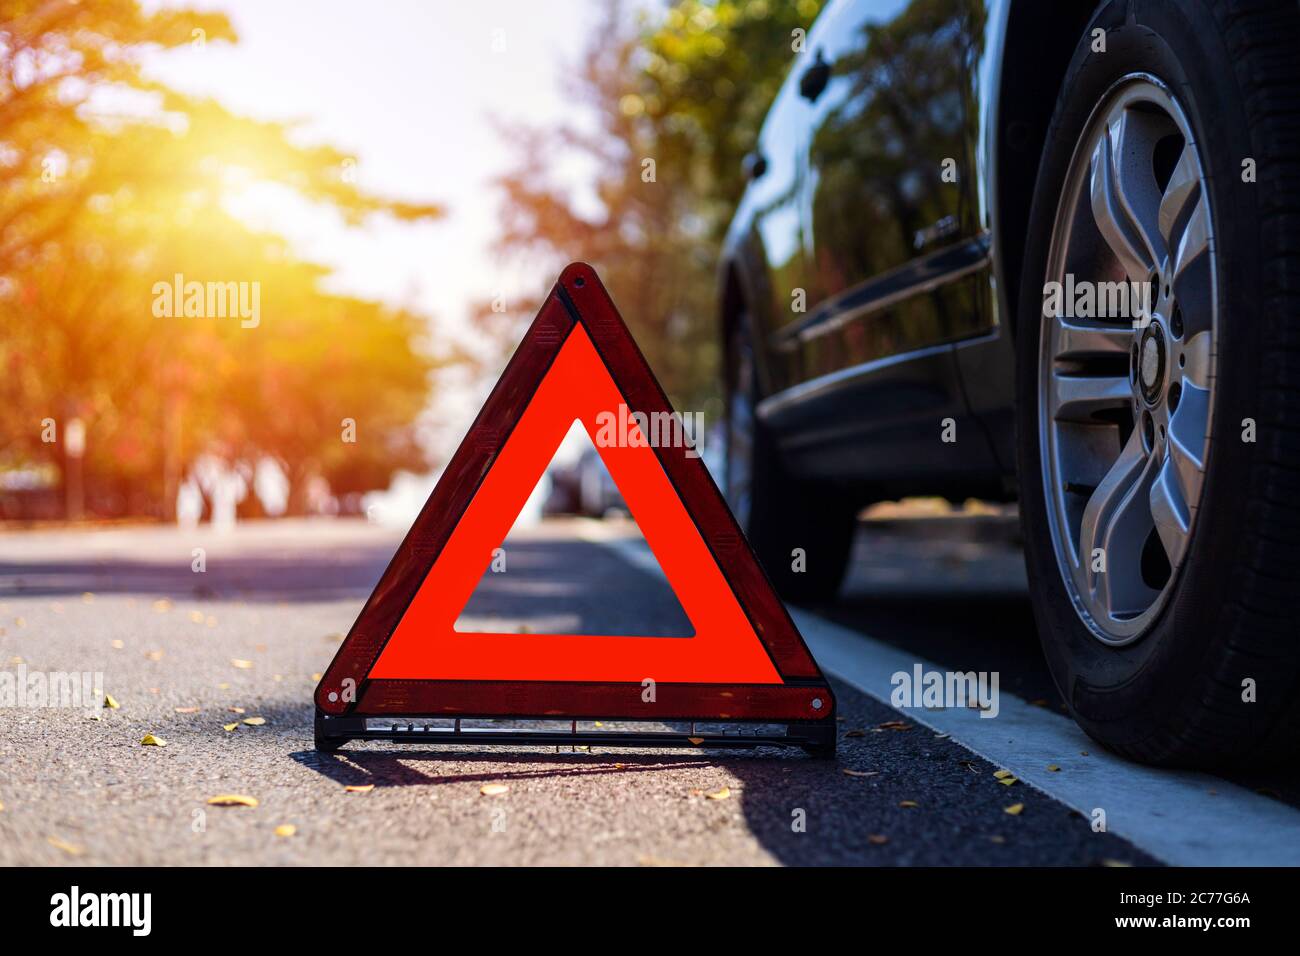 Triangle rouge, panneau d'arrêt d'urgence rouge, symbole d'urgence rouge avec arrêt de voiture et stationnement sur route. Banque D'Images